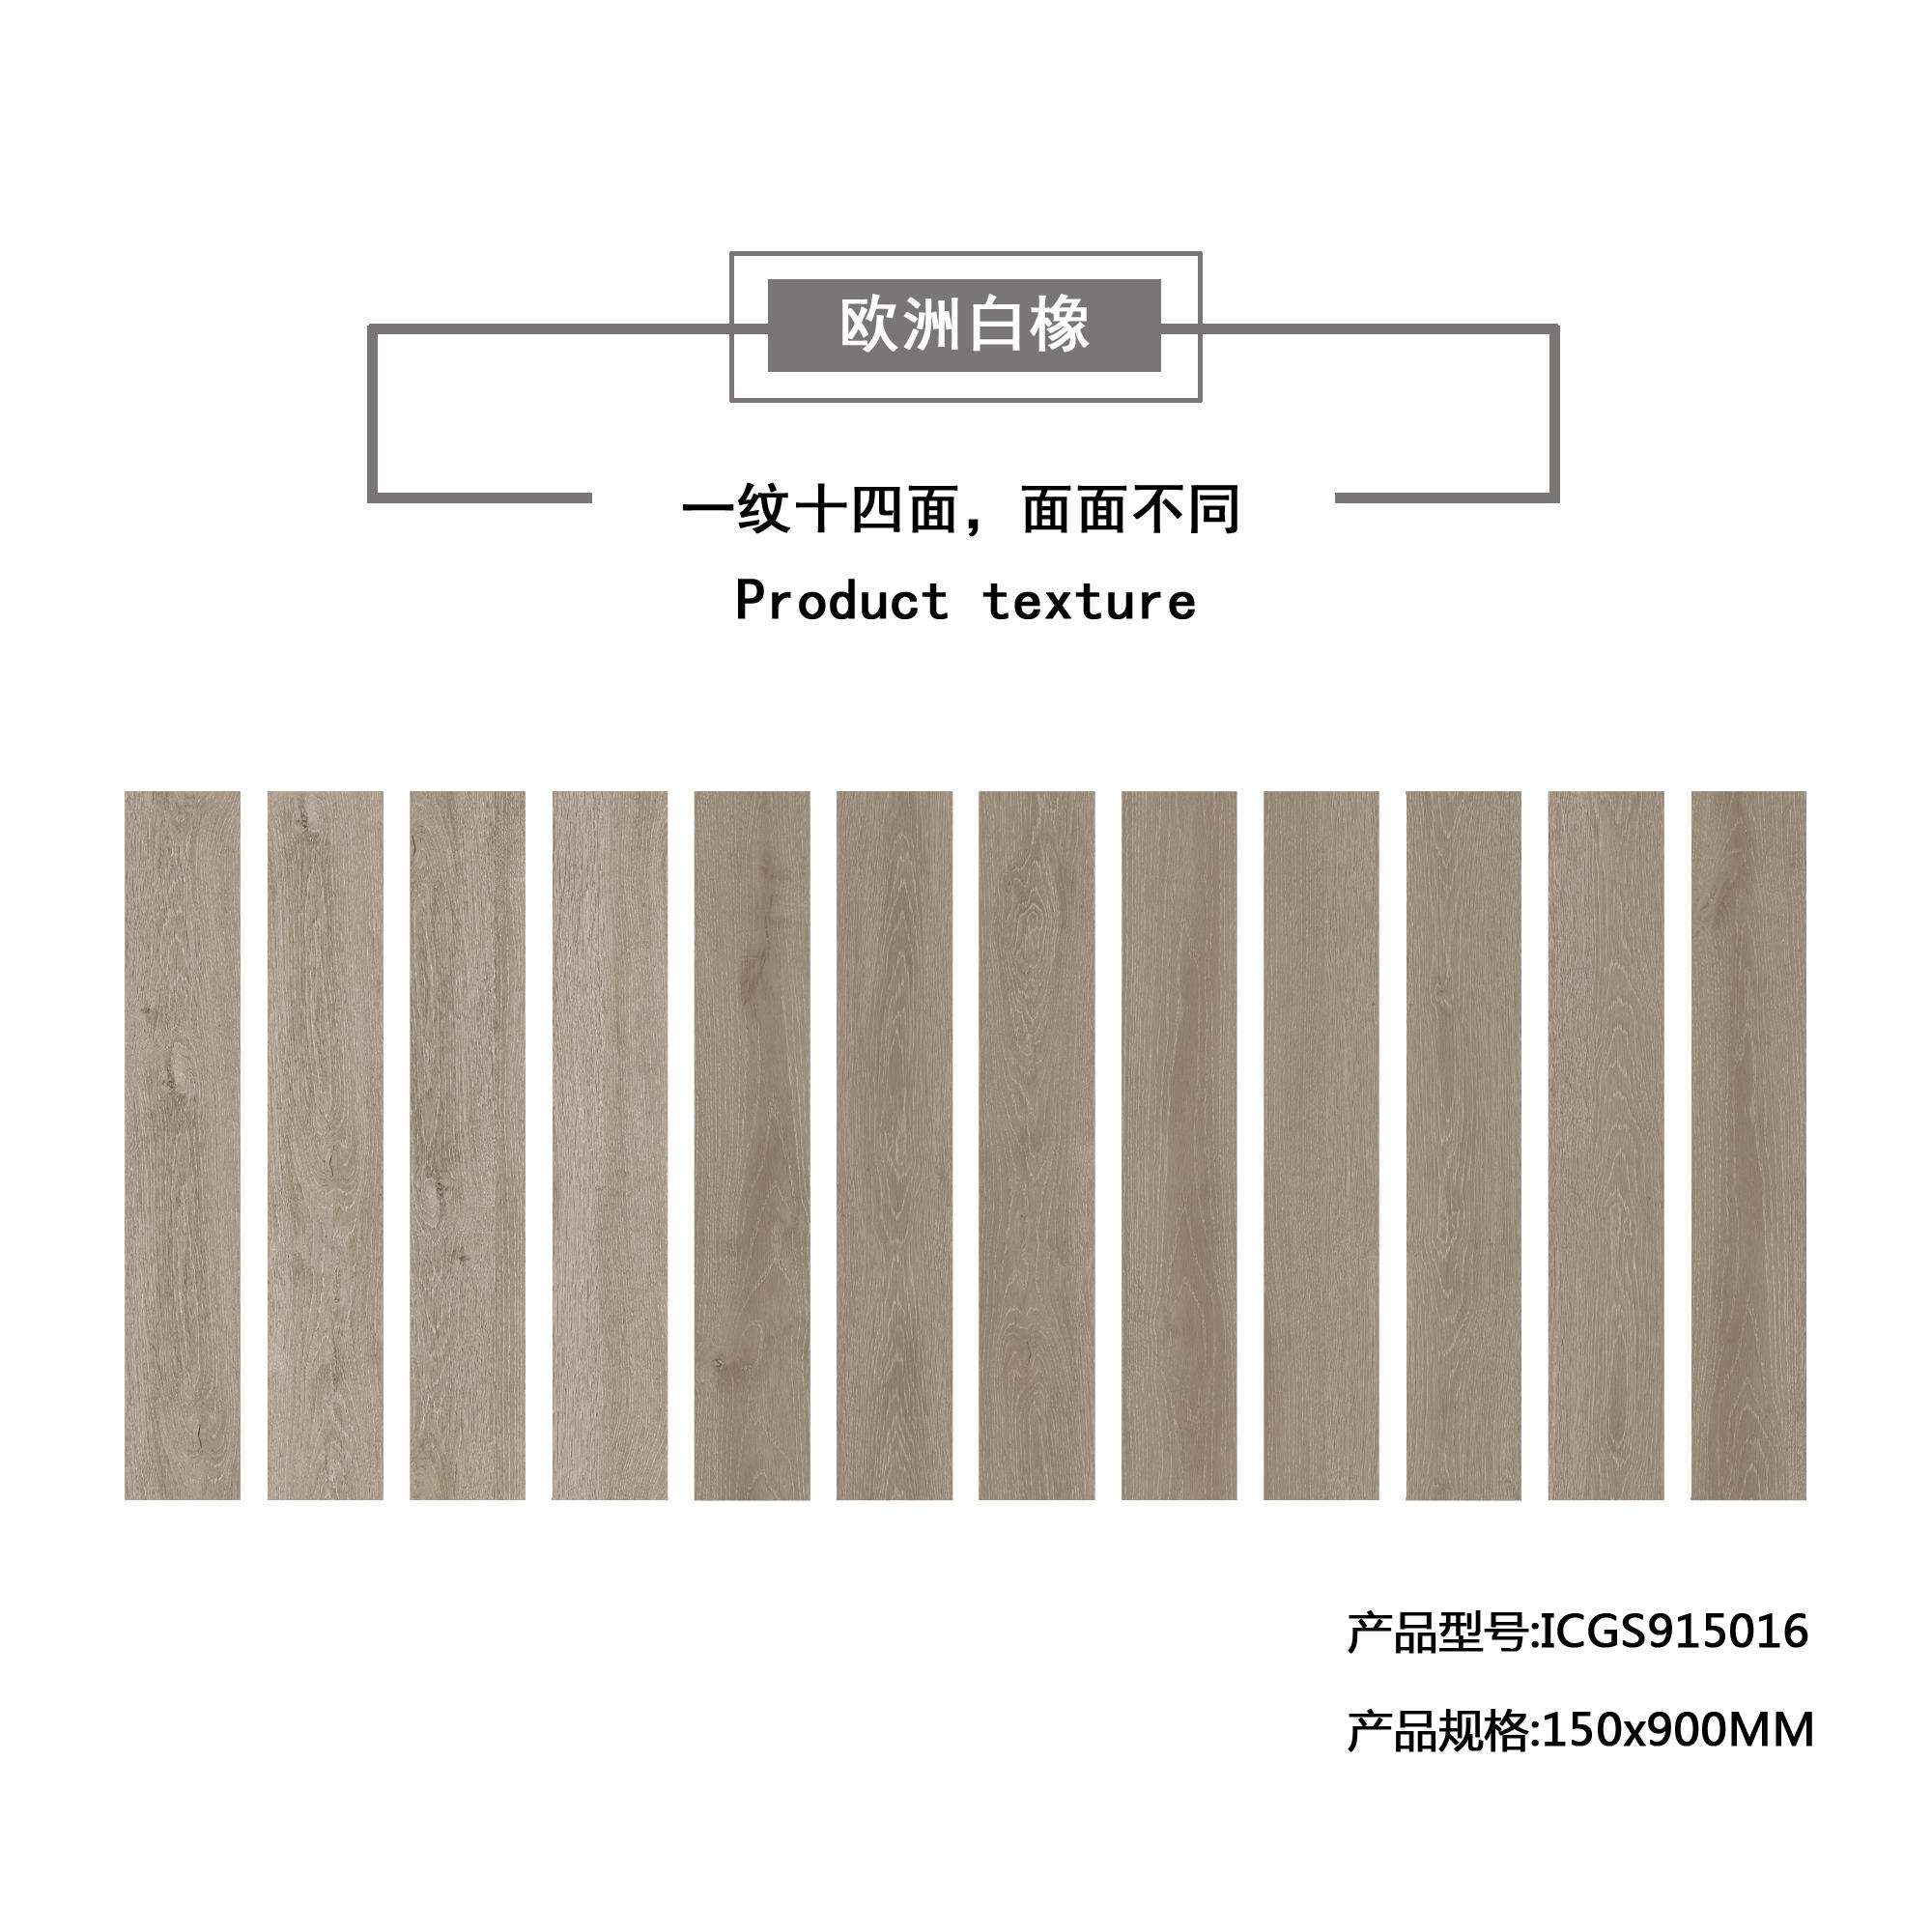 欧洲白橡（卡其灰）木纹地板砖ICGS915016产品混铺图